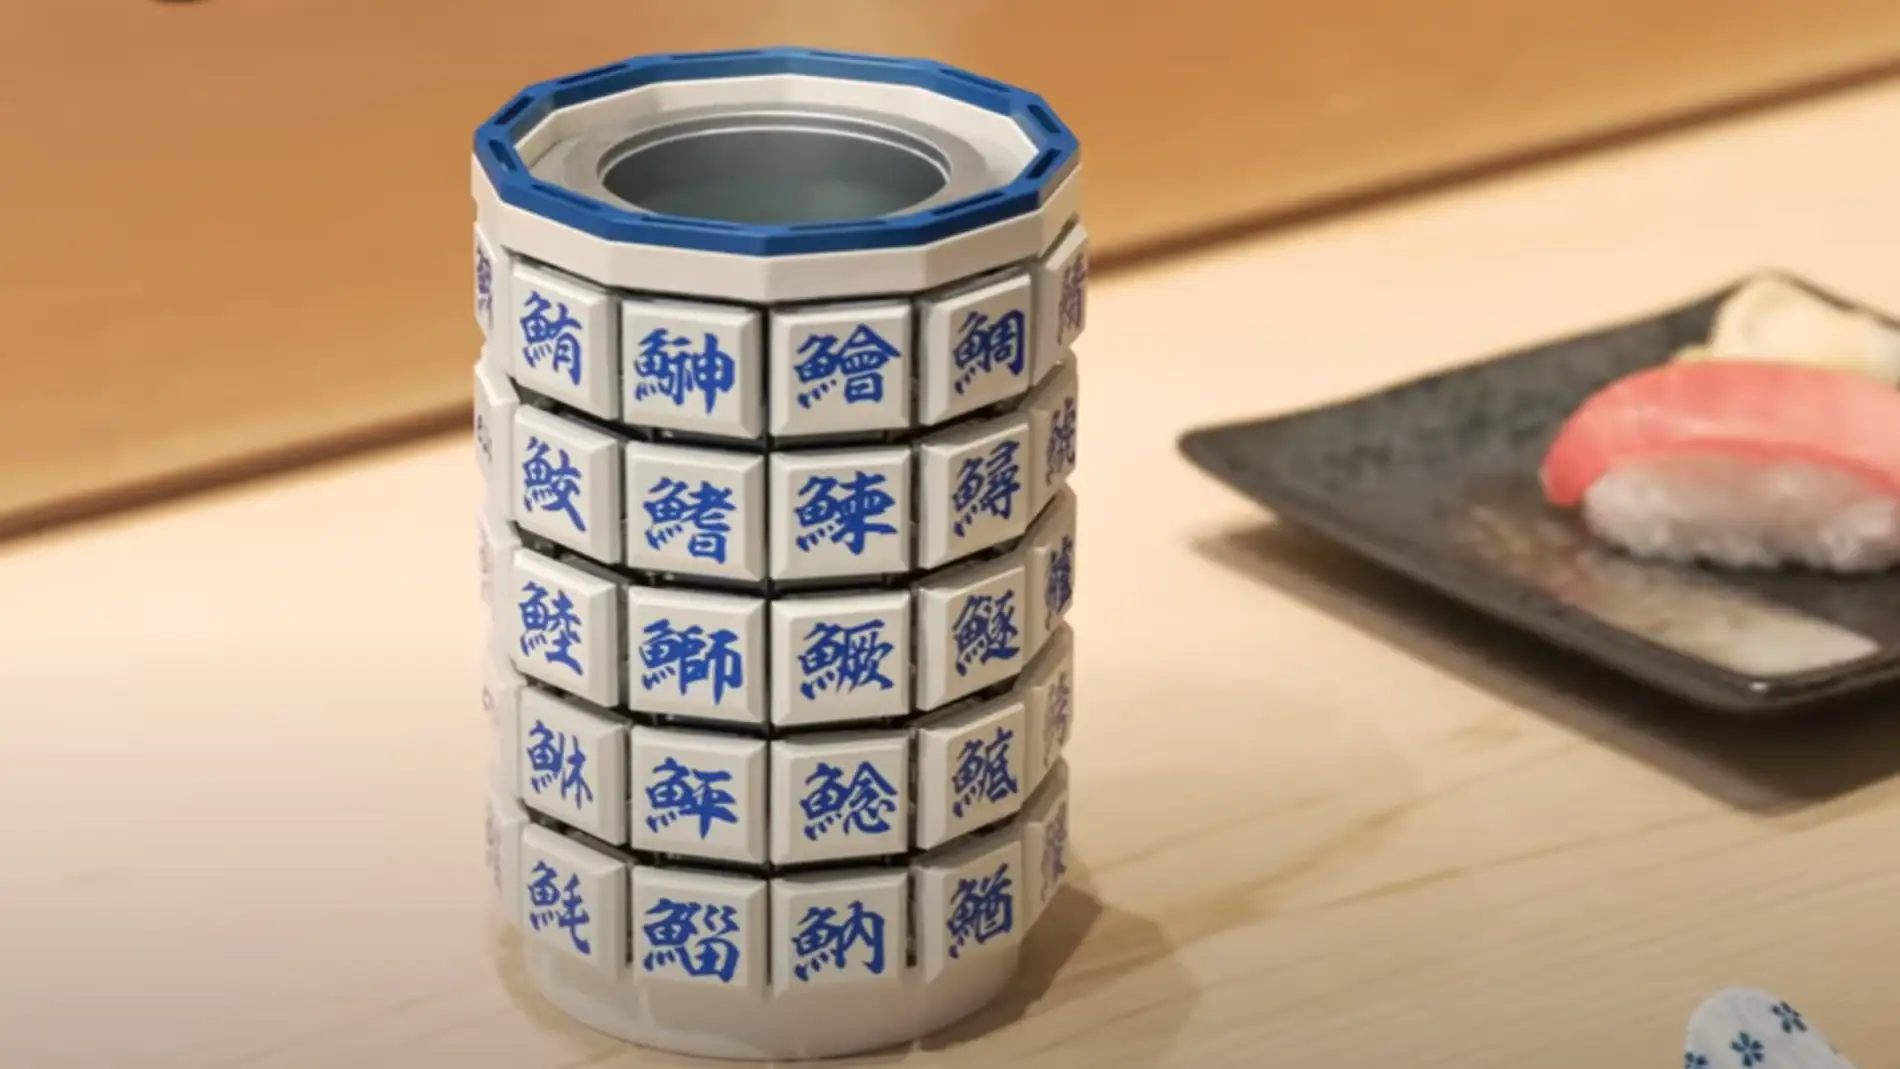 ¿Genialidad o incómodo? Google Japón inventa un teclado con forma de taza de té